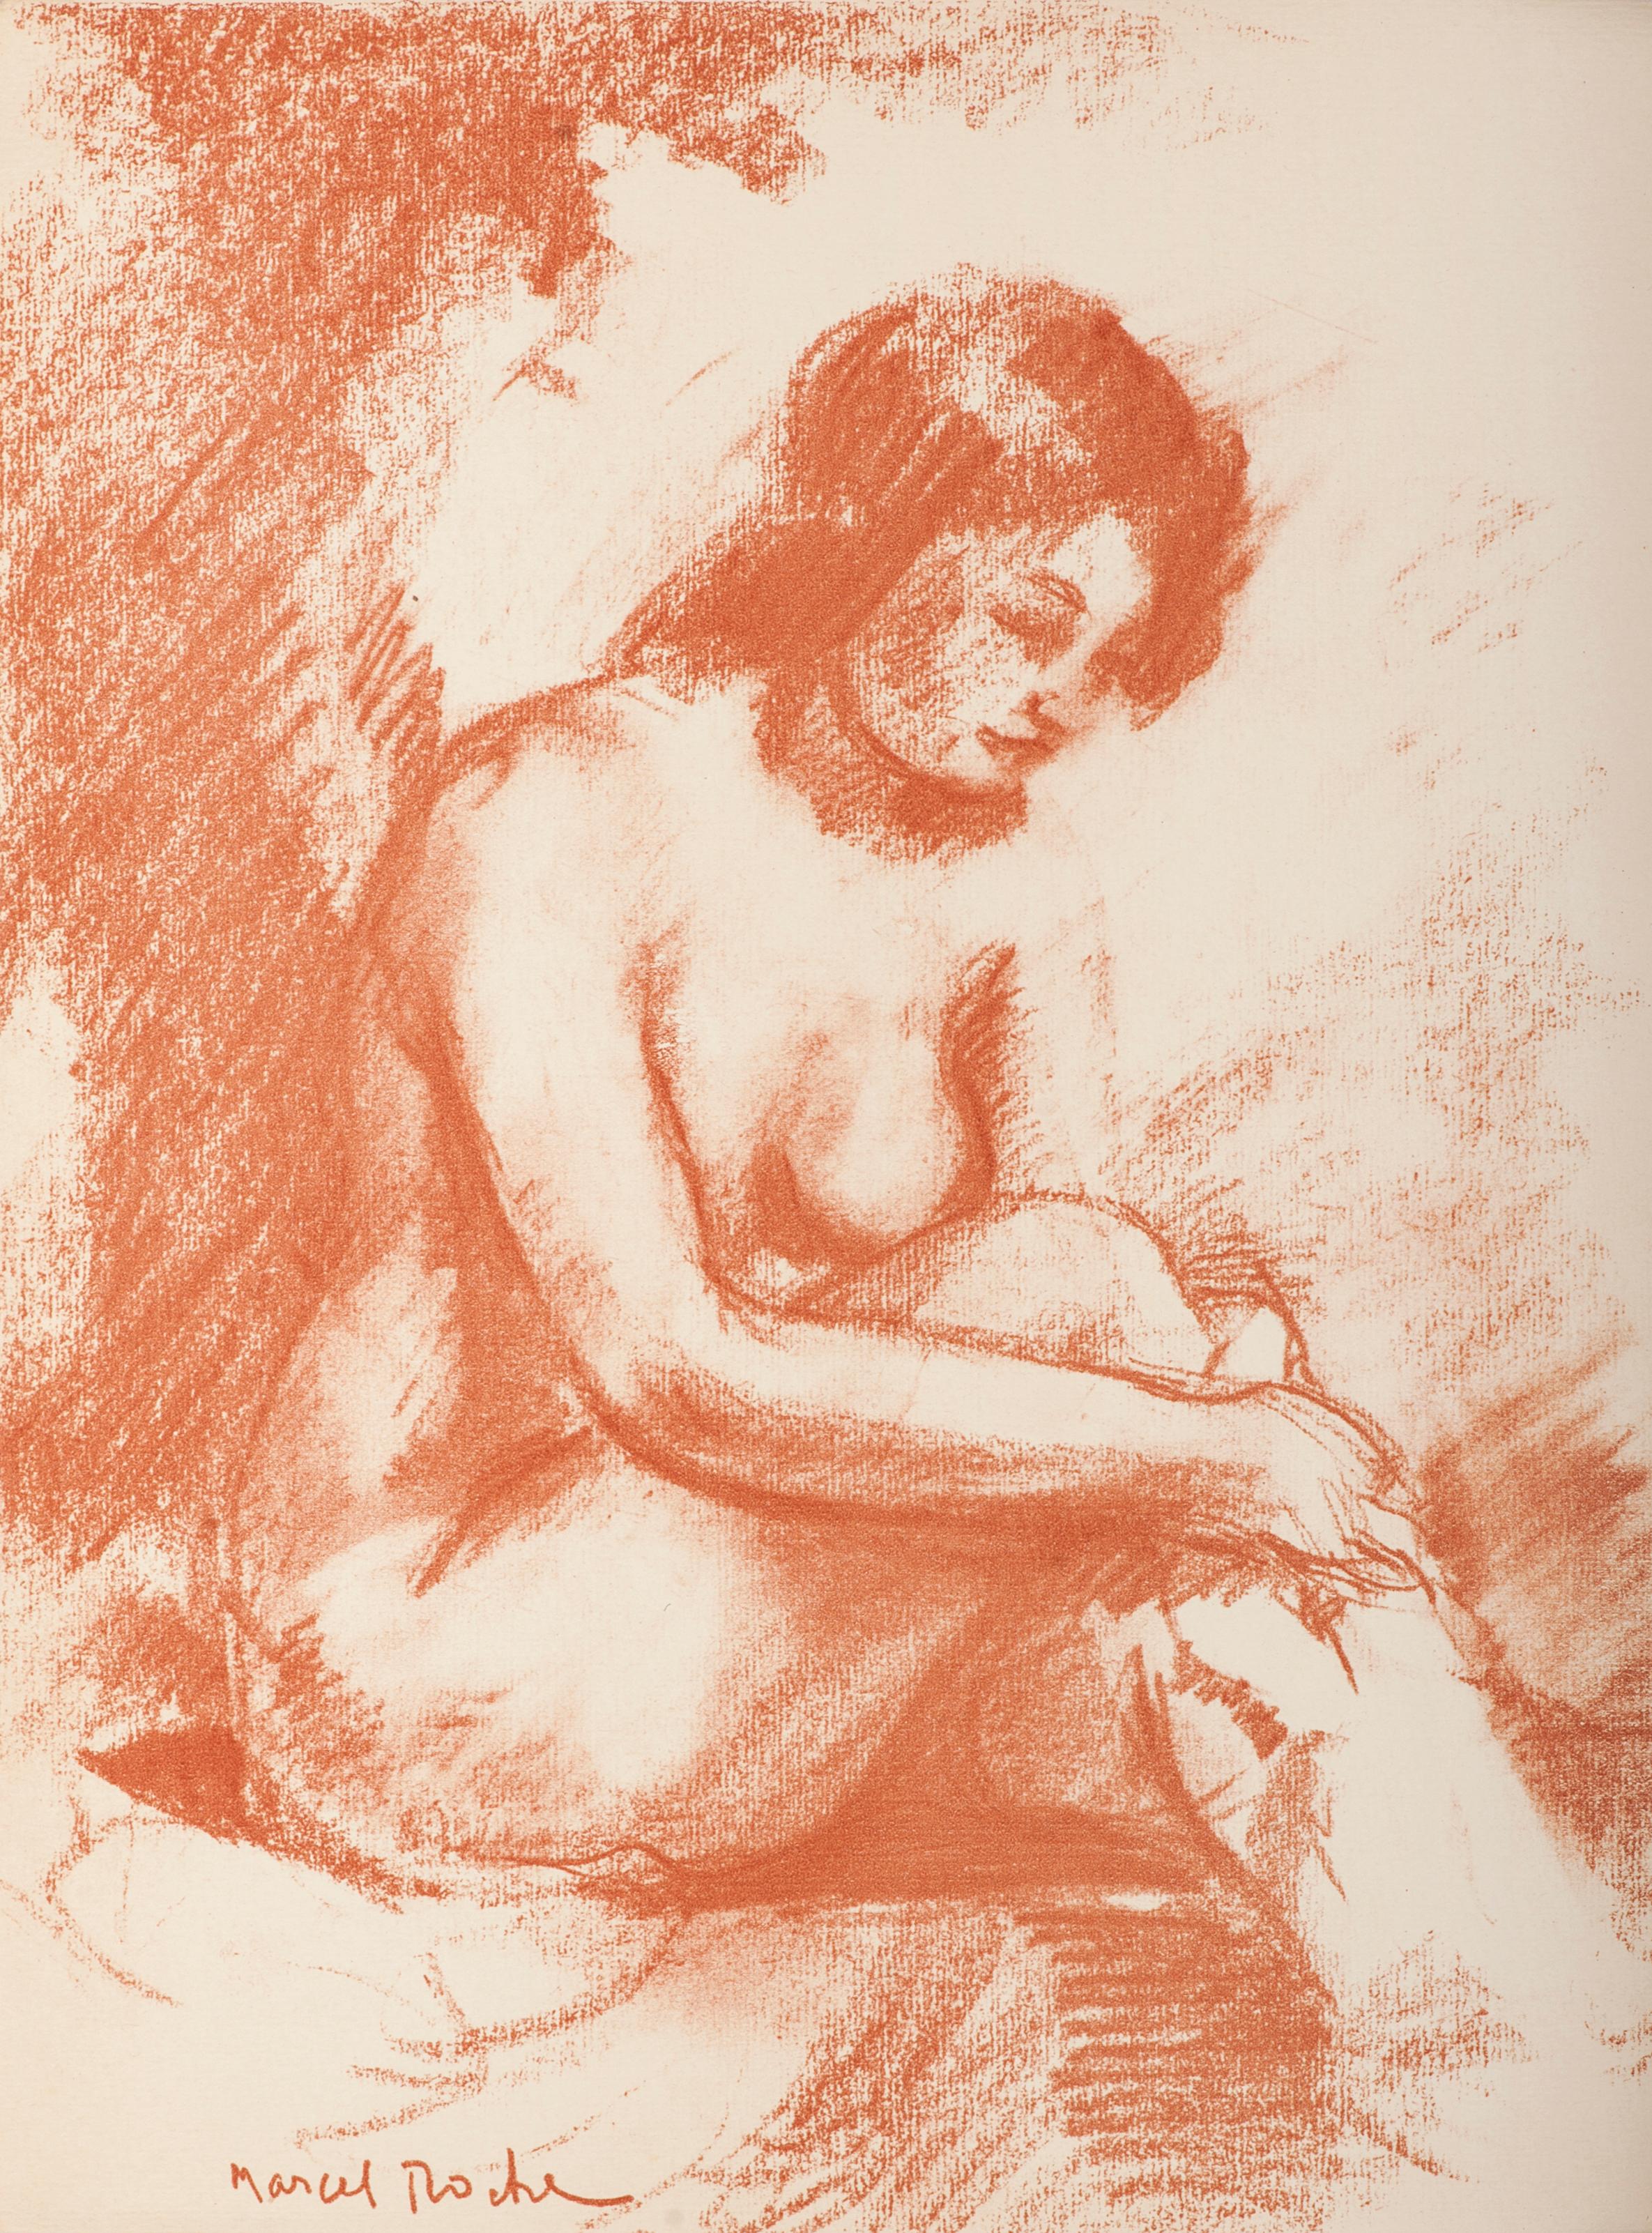 Femme Nue de face se lavant - Lithograph by M. Roche - 1930 ca.